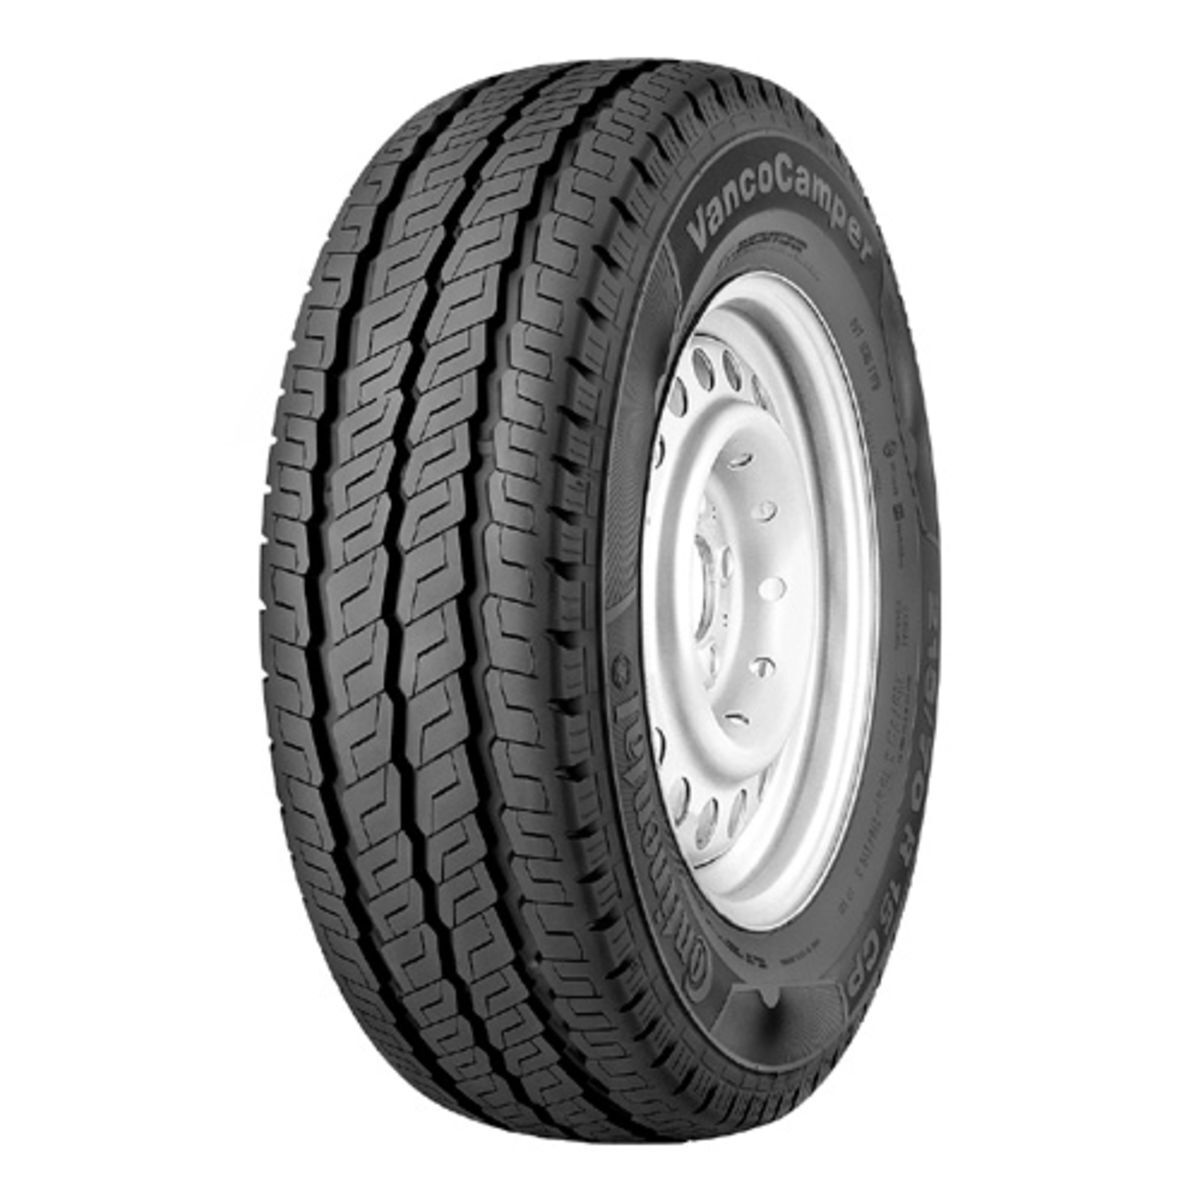 Neumáticos de verano CONTINENTAL VancoCamper 215/70R15CP, 109R TL